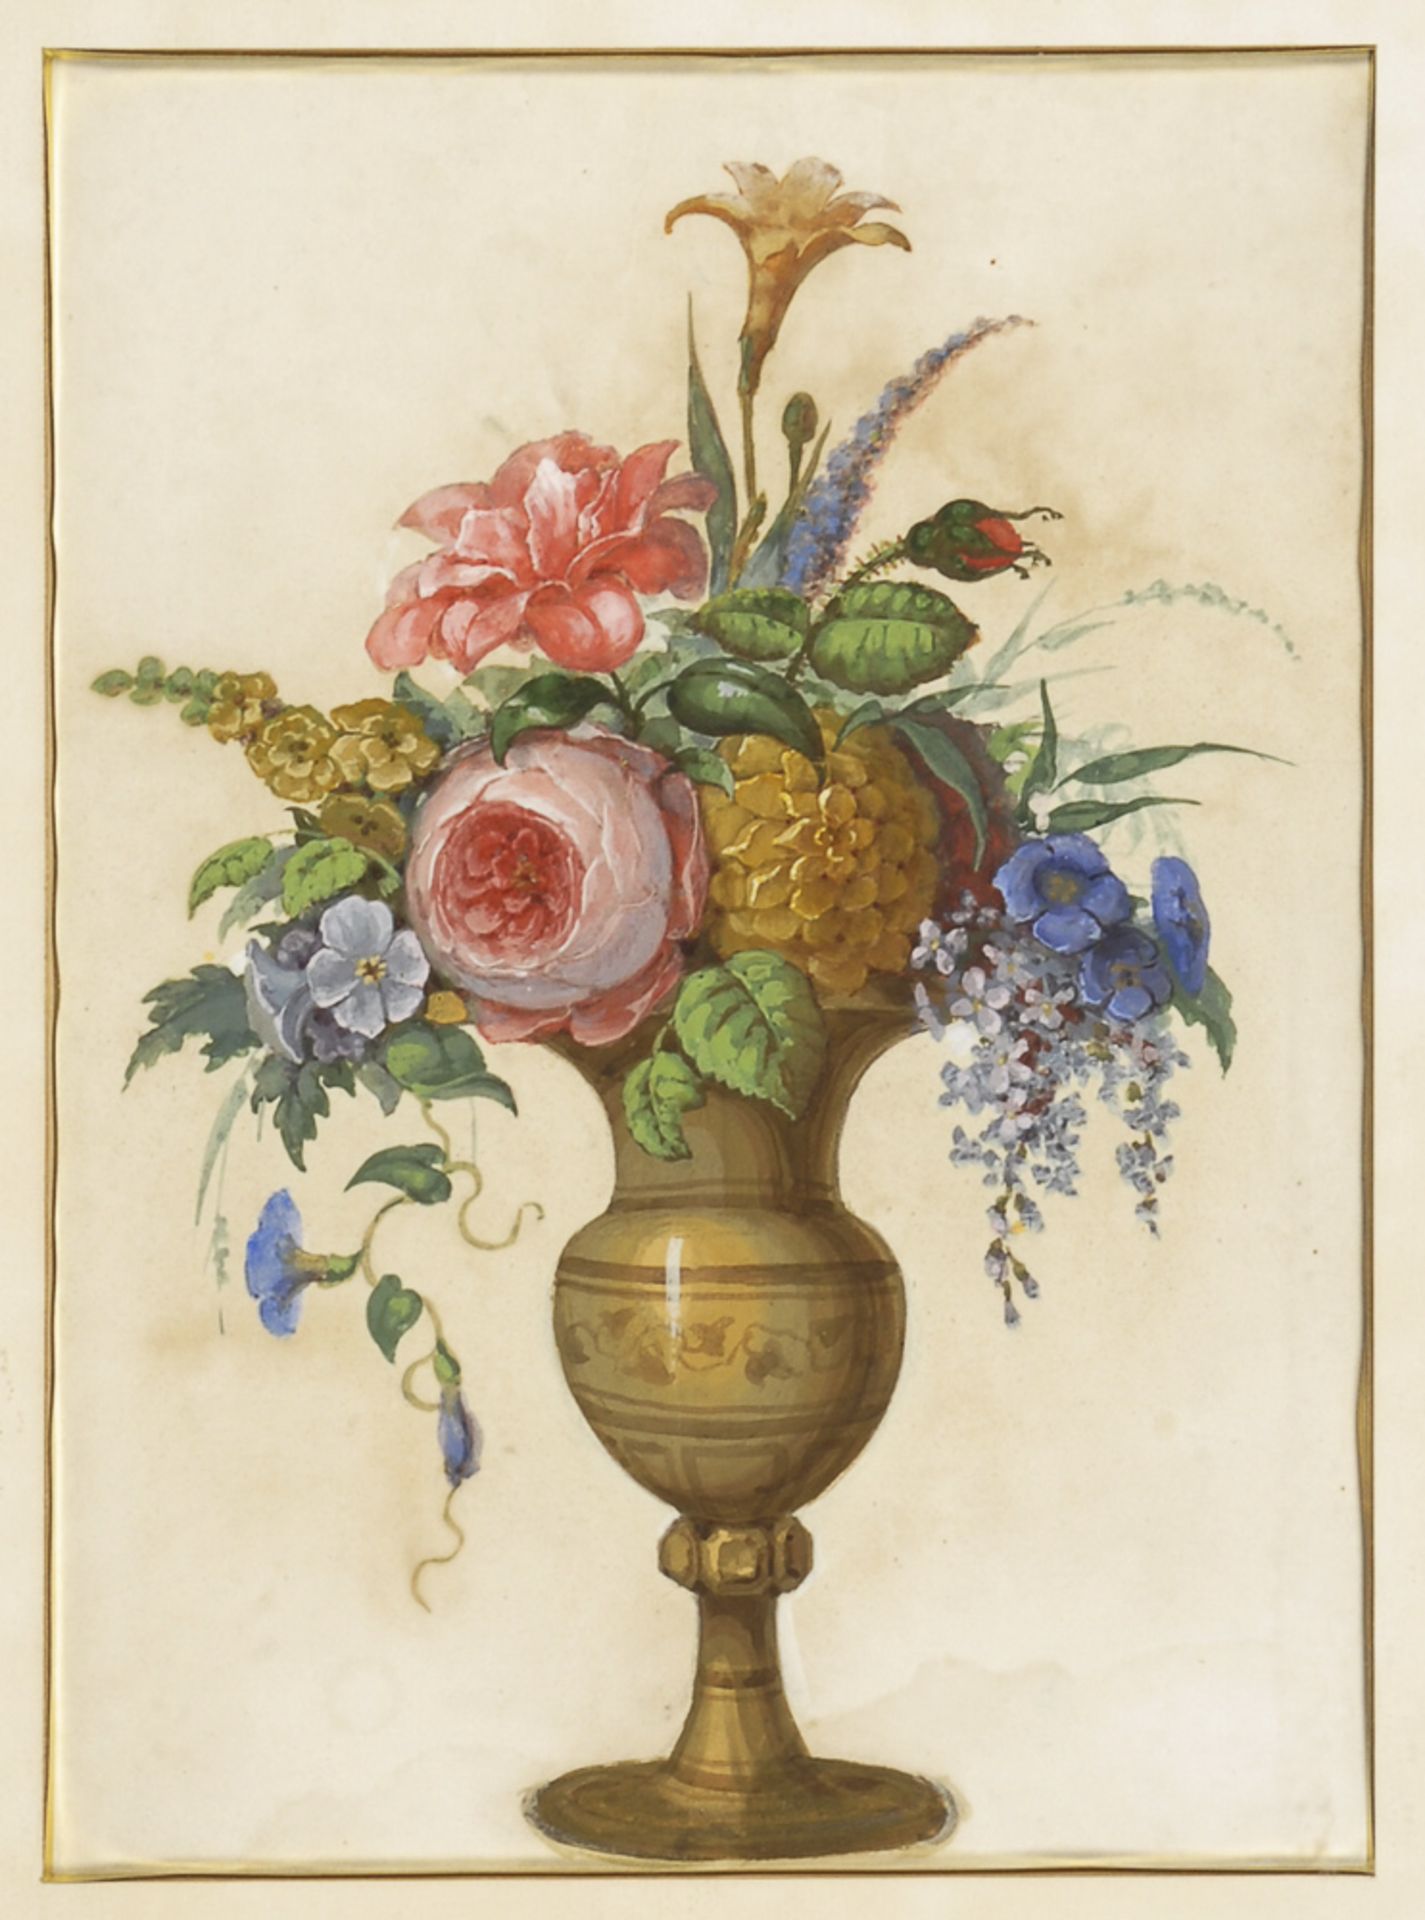 Stillleben mit Blumenstrauß.Gouache, unsigniert, 2. Hälfte 19. Jh. Bildausschnitt 35 x 26 cm,